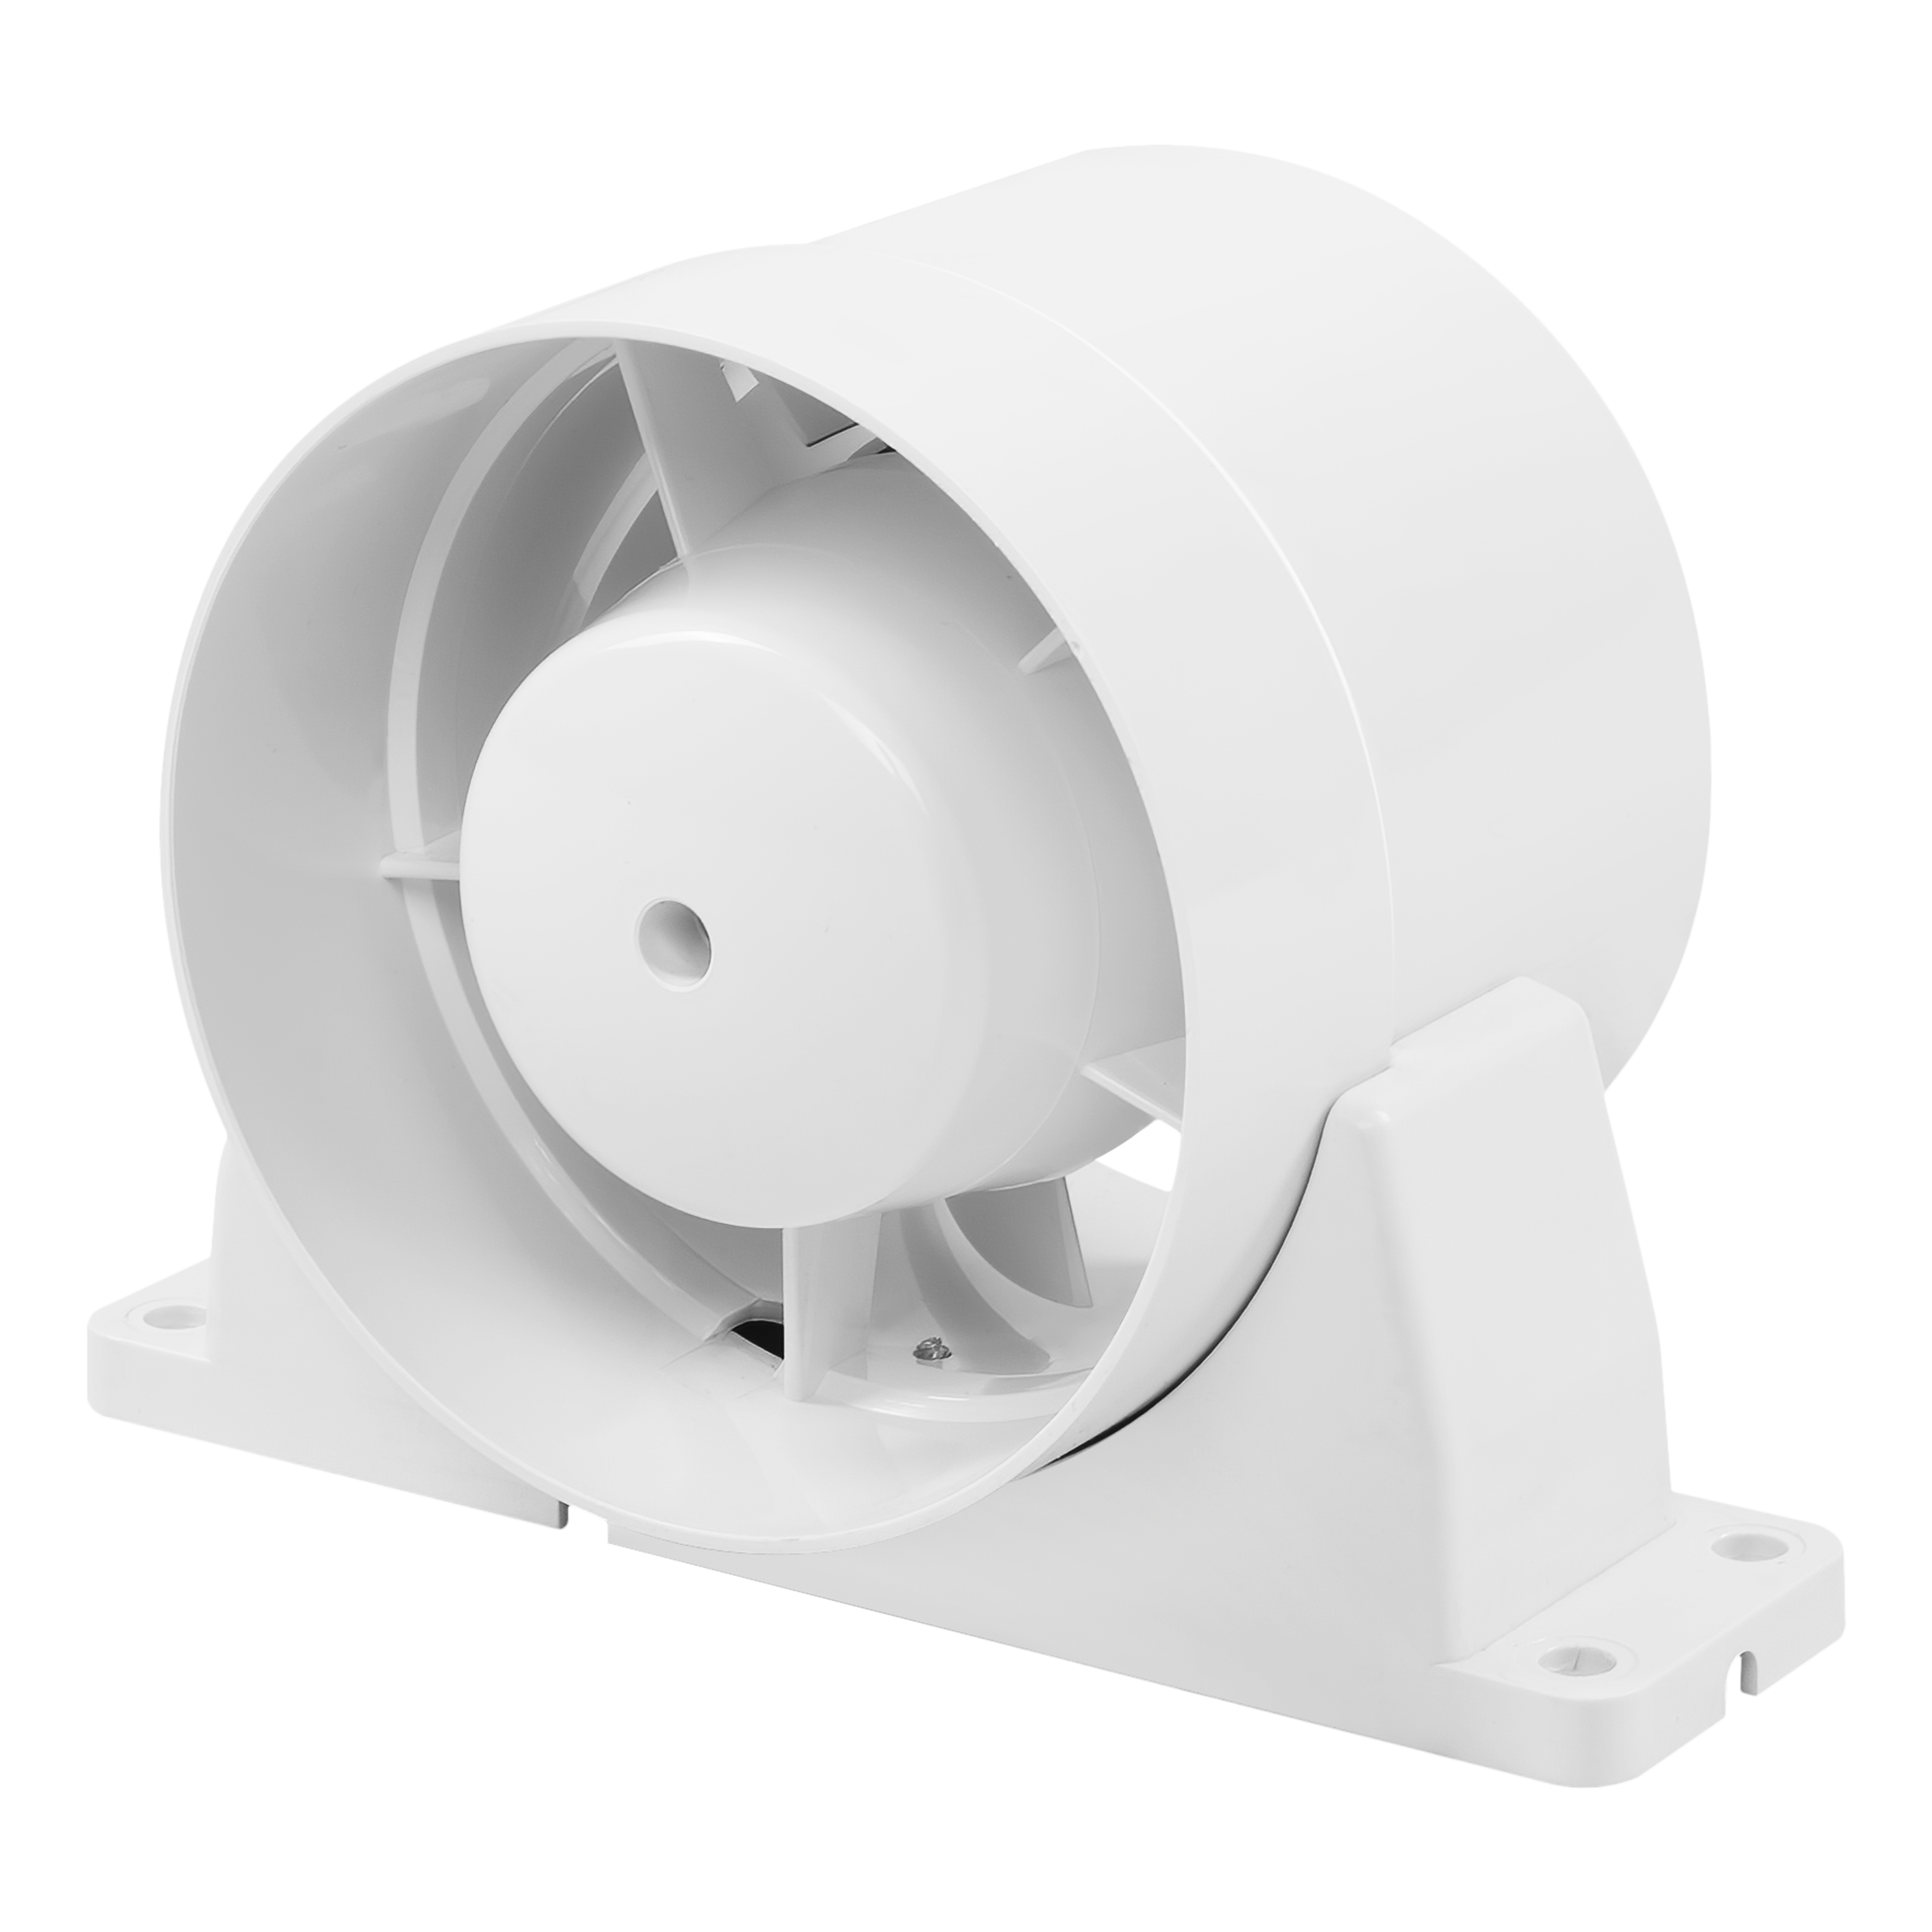 Канальный вентилятор повышенной производительности Вентс 100 ВКОк турбо